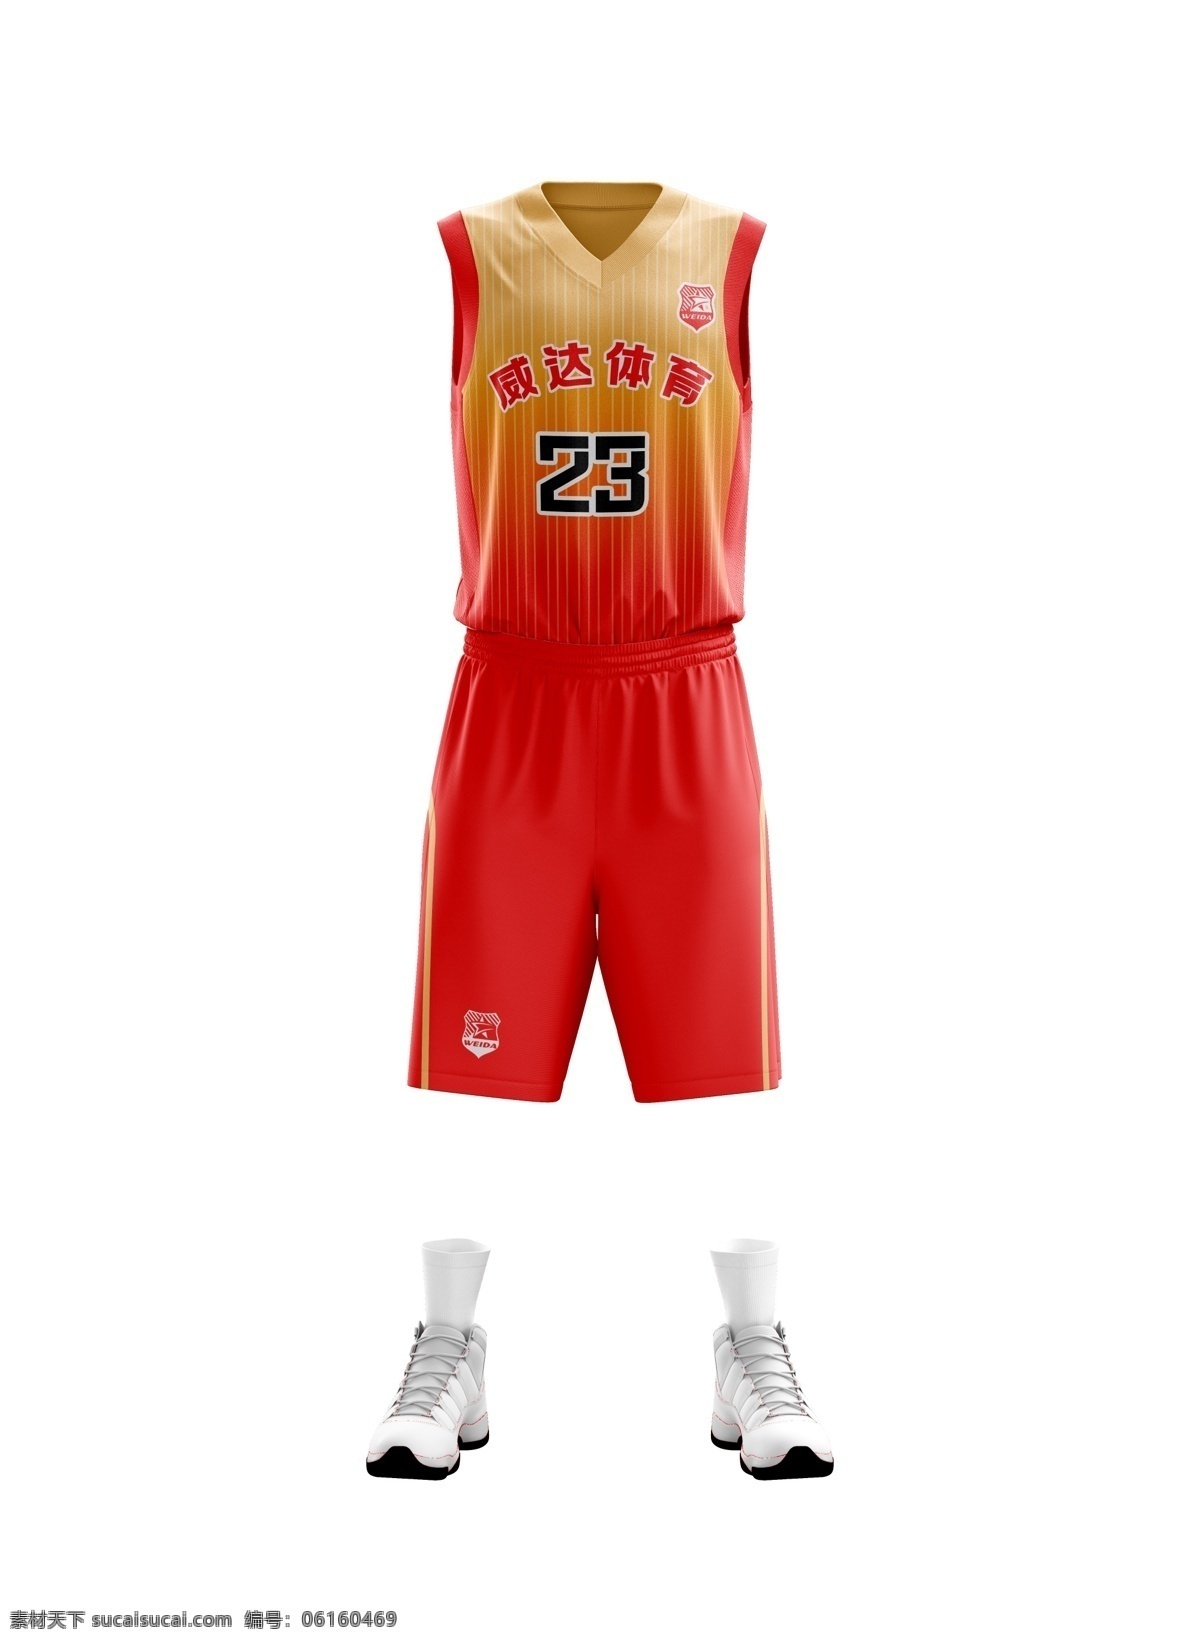 篮球服样机 篮球 篮球服 样机 球服 体育服装 生活百科 体育用品